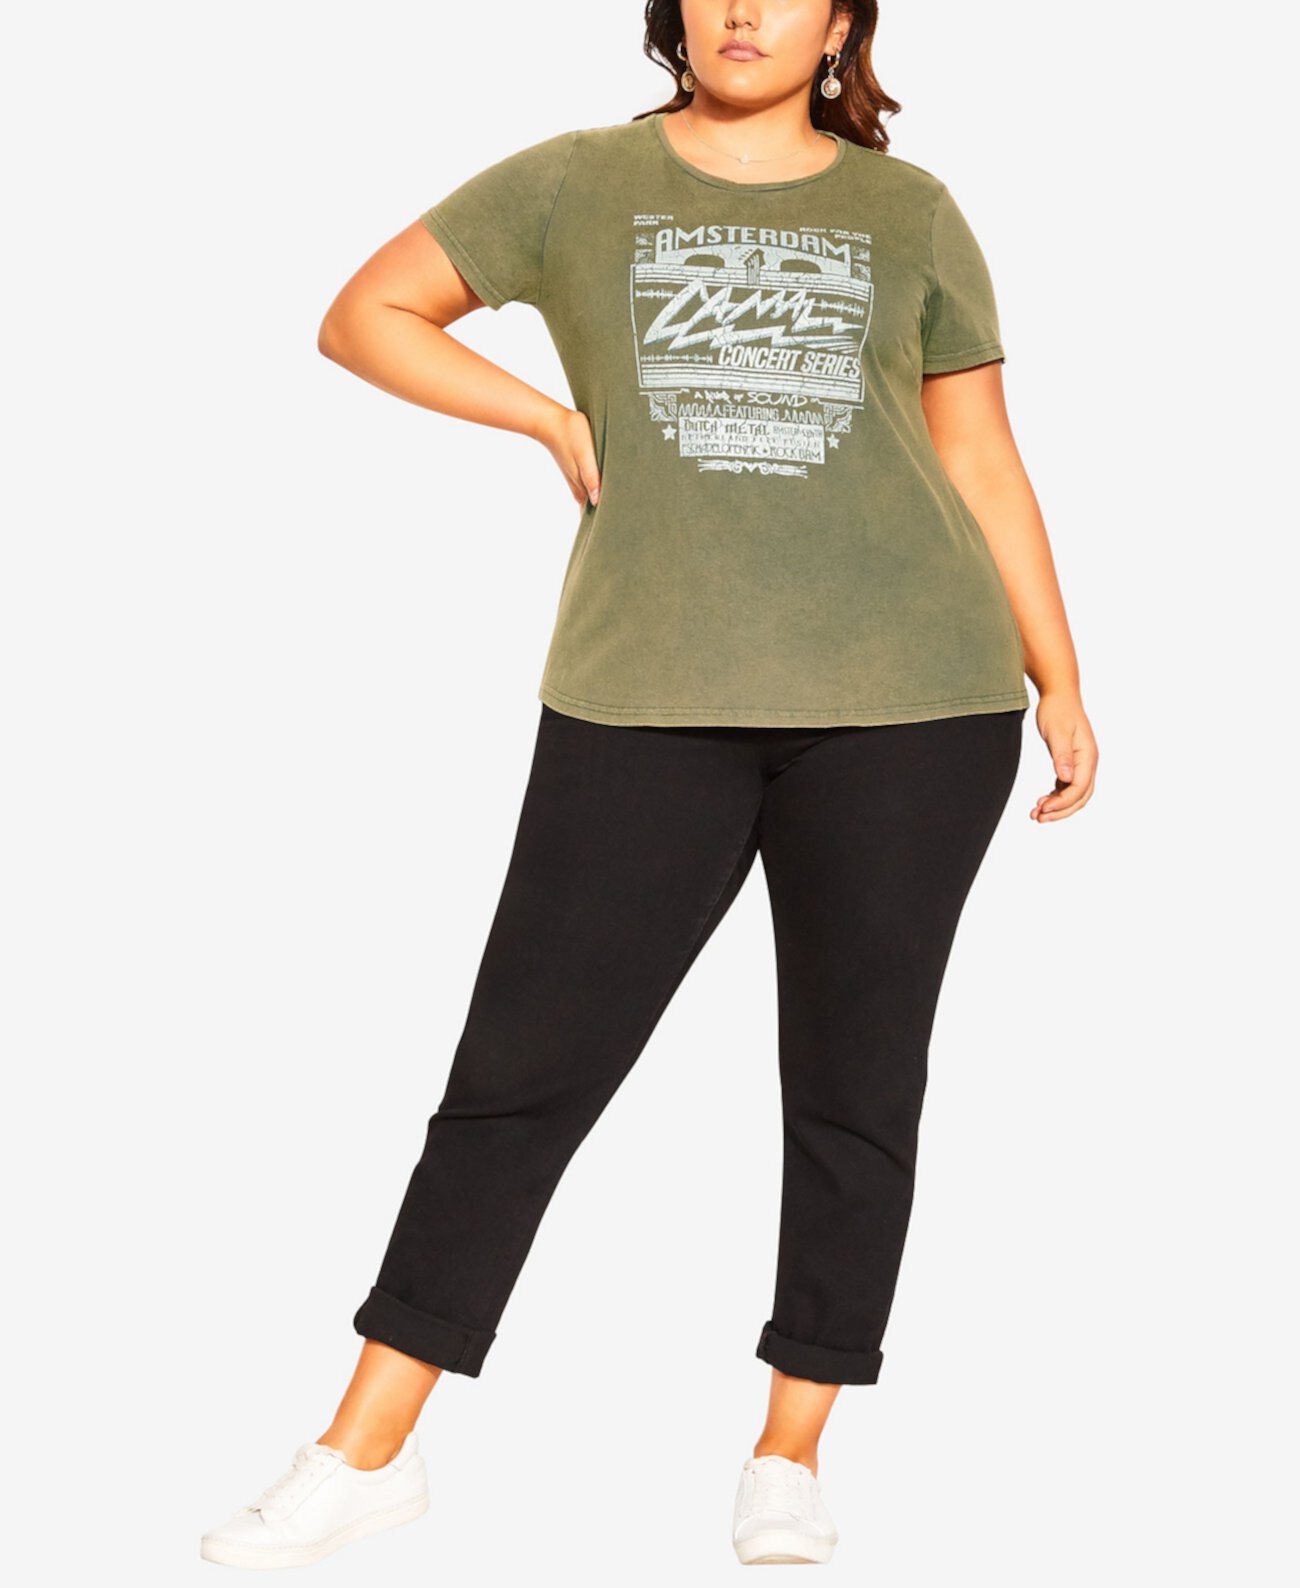 Модная футболка больших размеров с графическим принтом City Chic